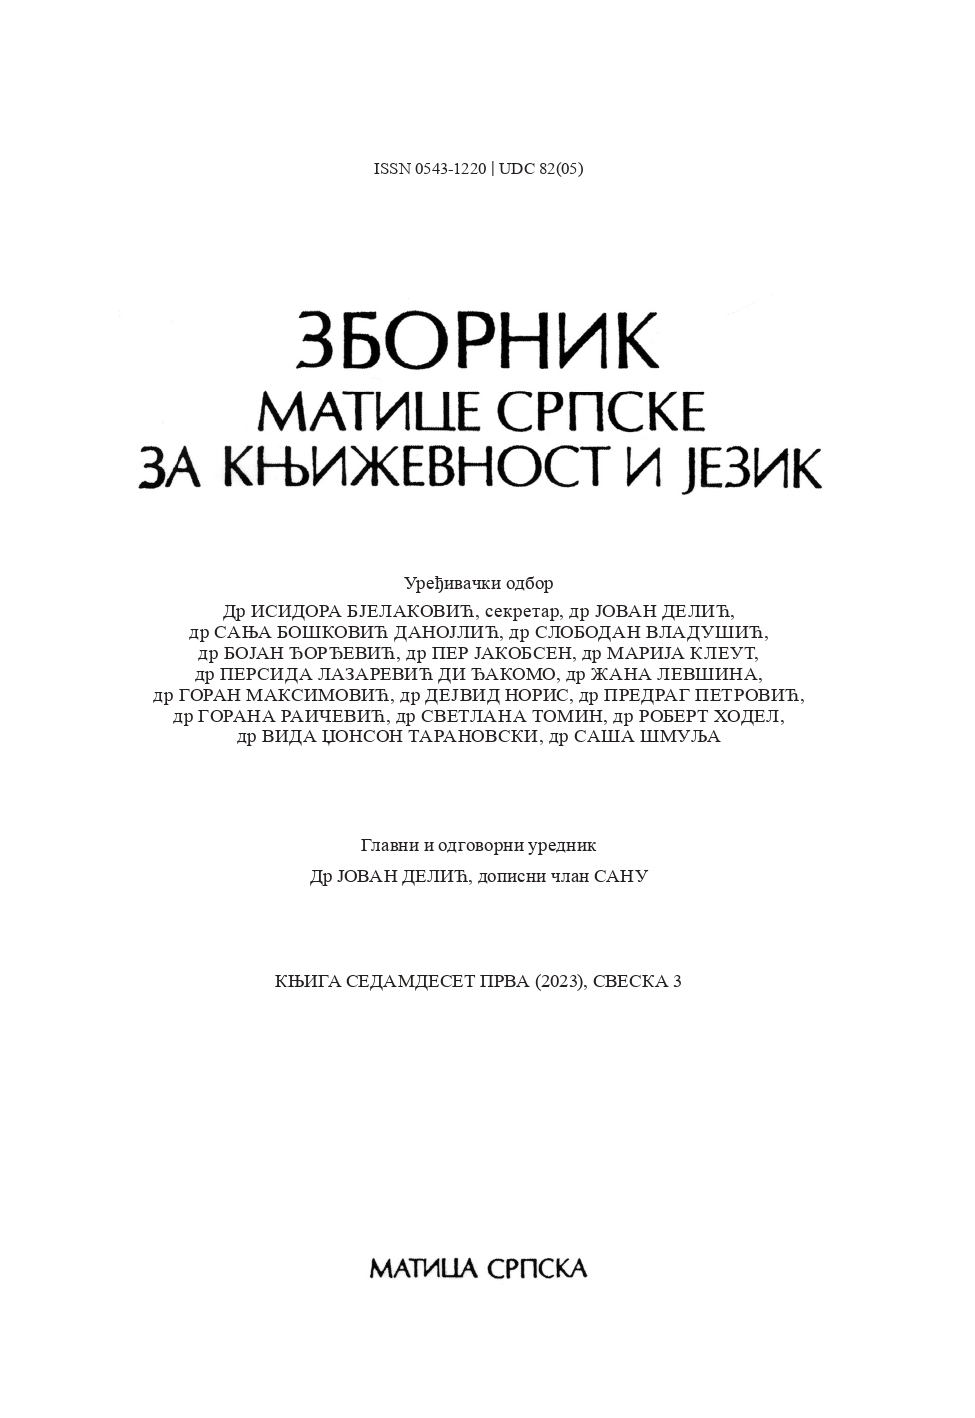 PROGRAMME VIEWPOINTS OF ZAHARIJE ORFELIN (II) Cover Image